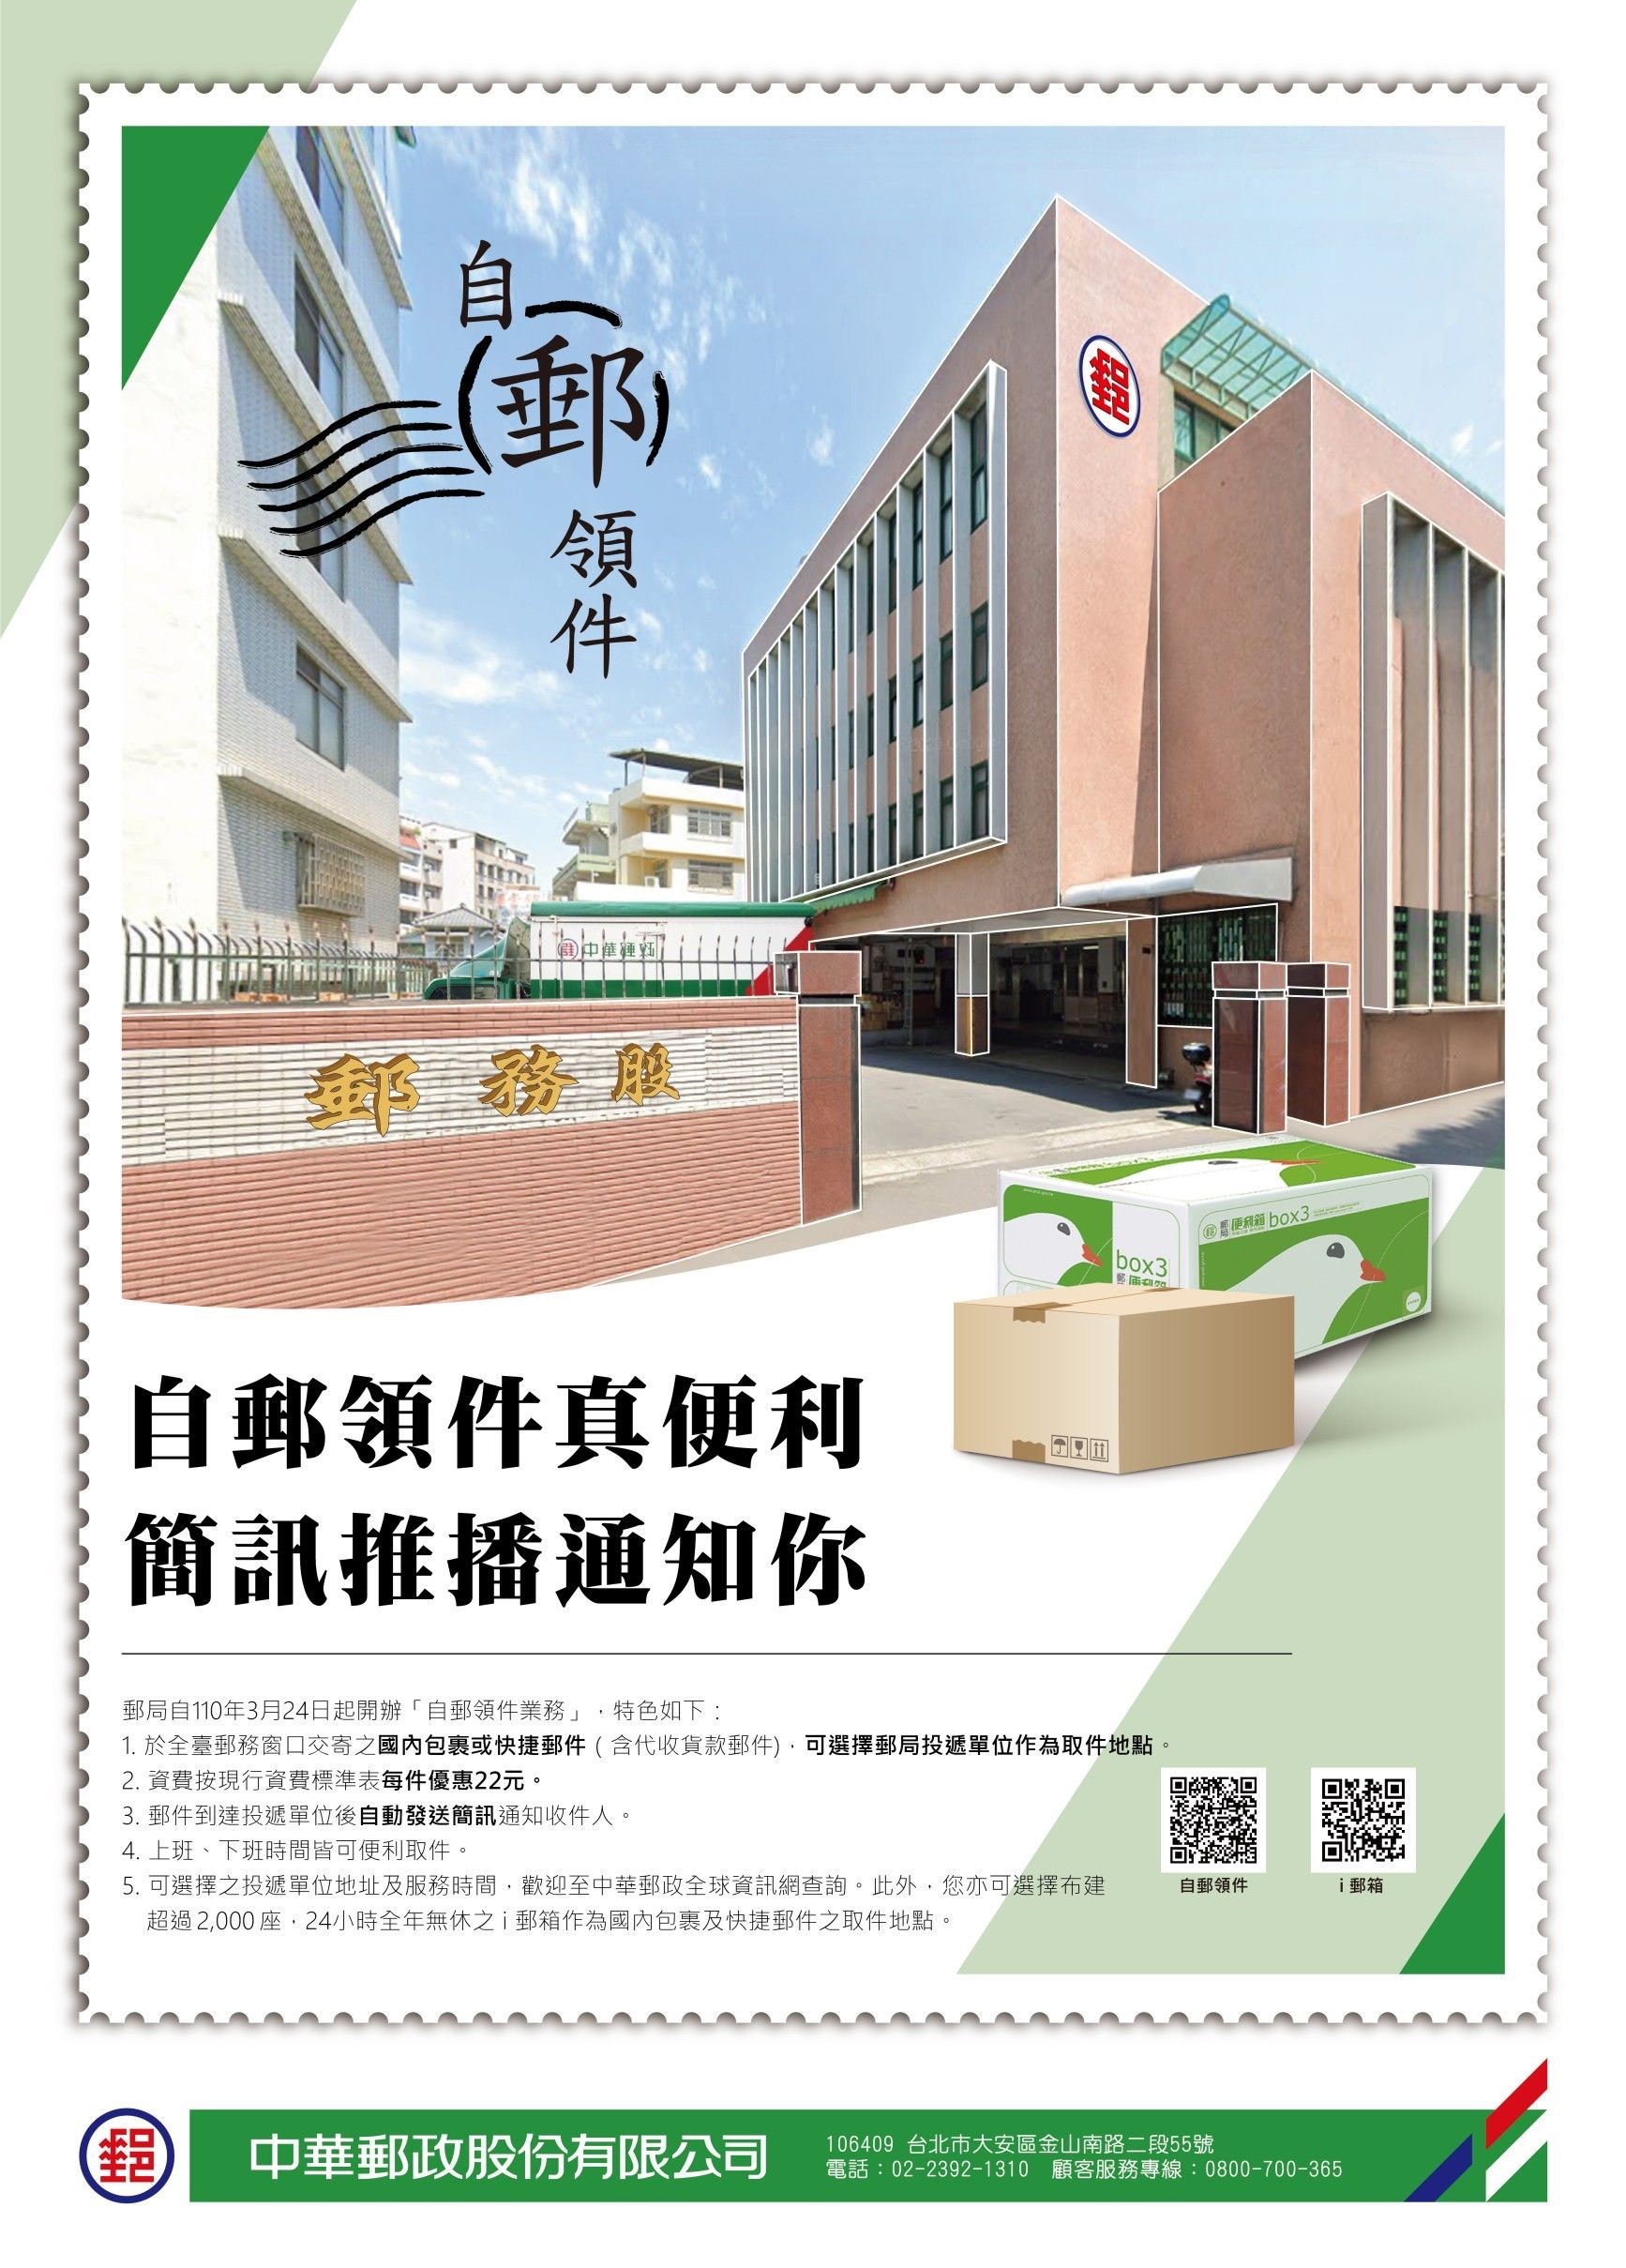 中華郵政開辦「自郵領件」業務  提供經濟實惠的寄件新選擇